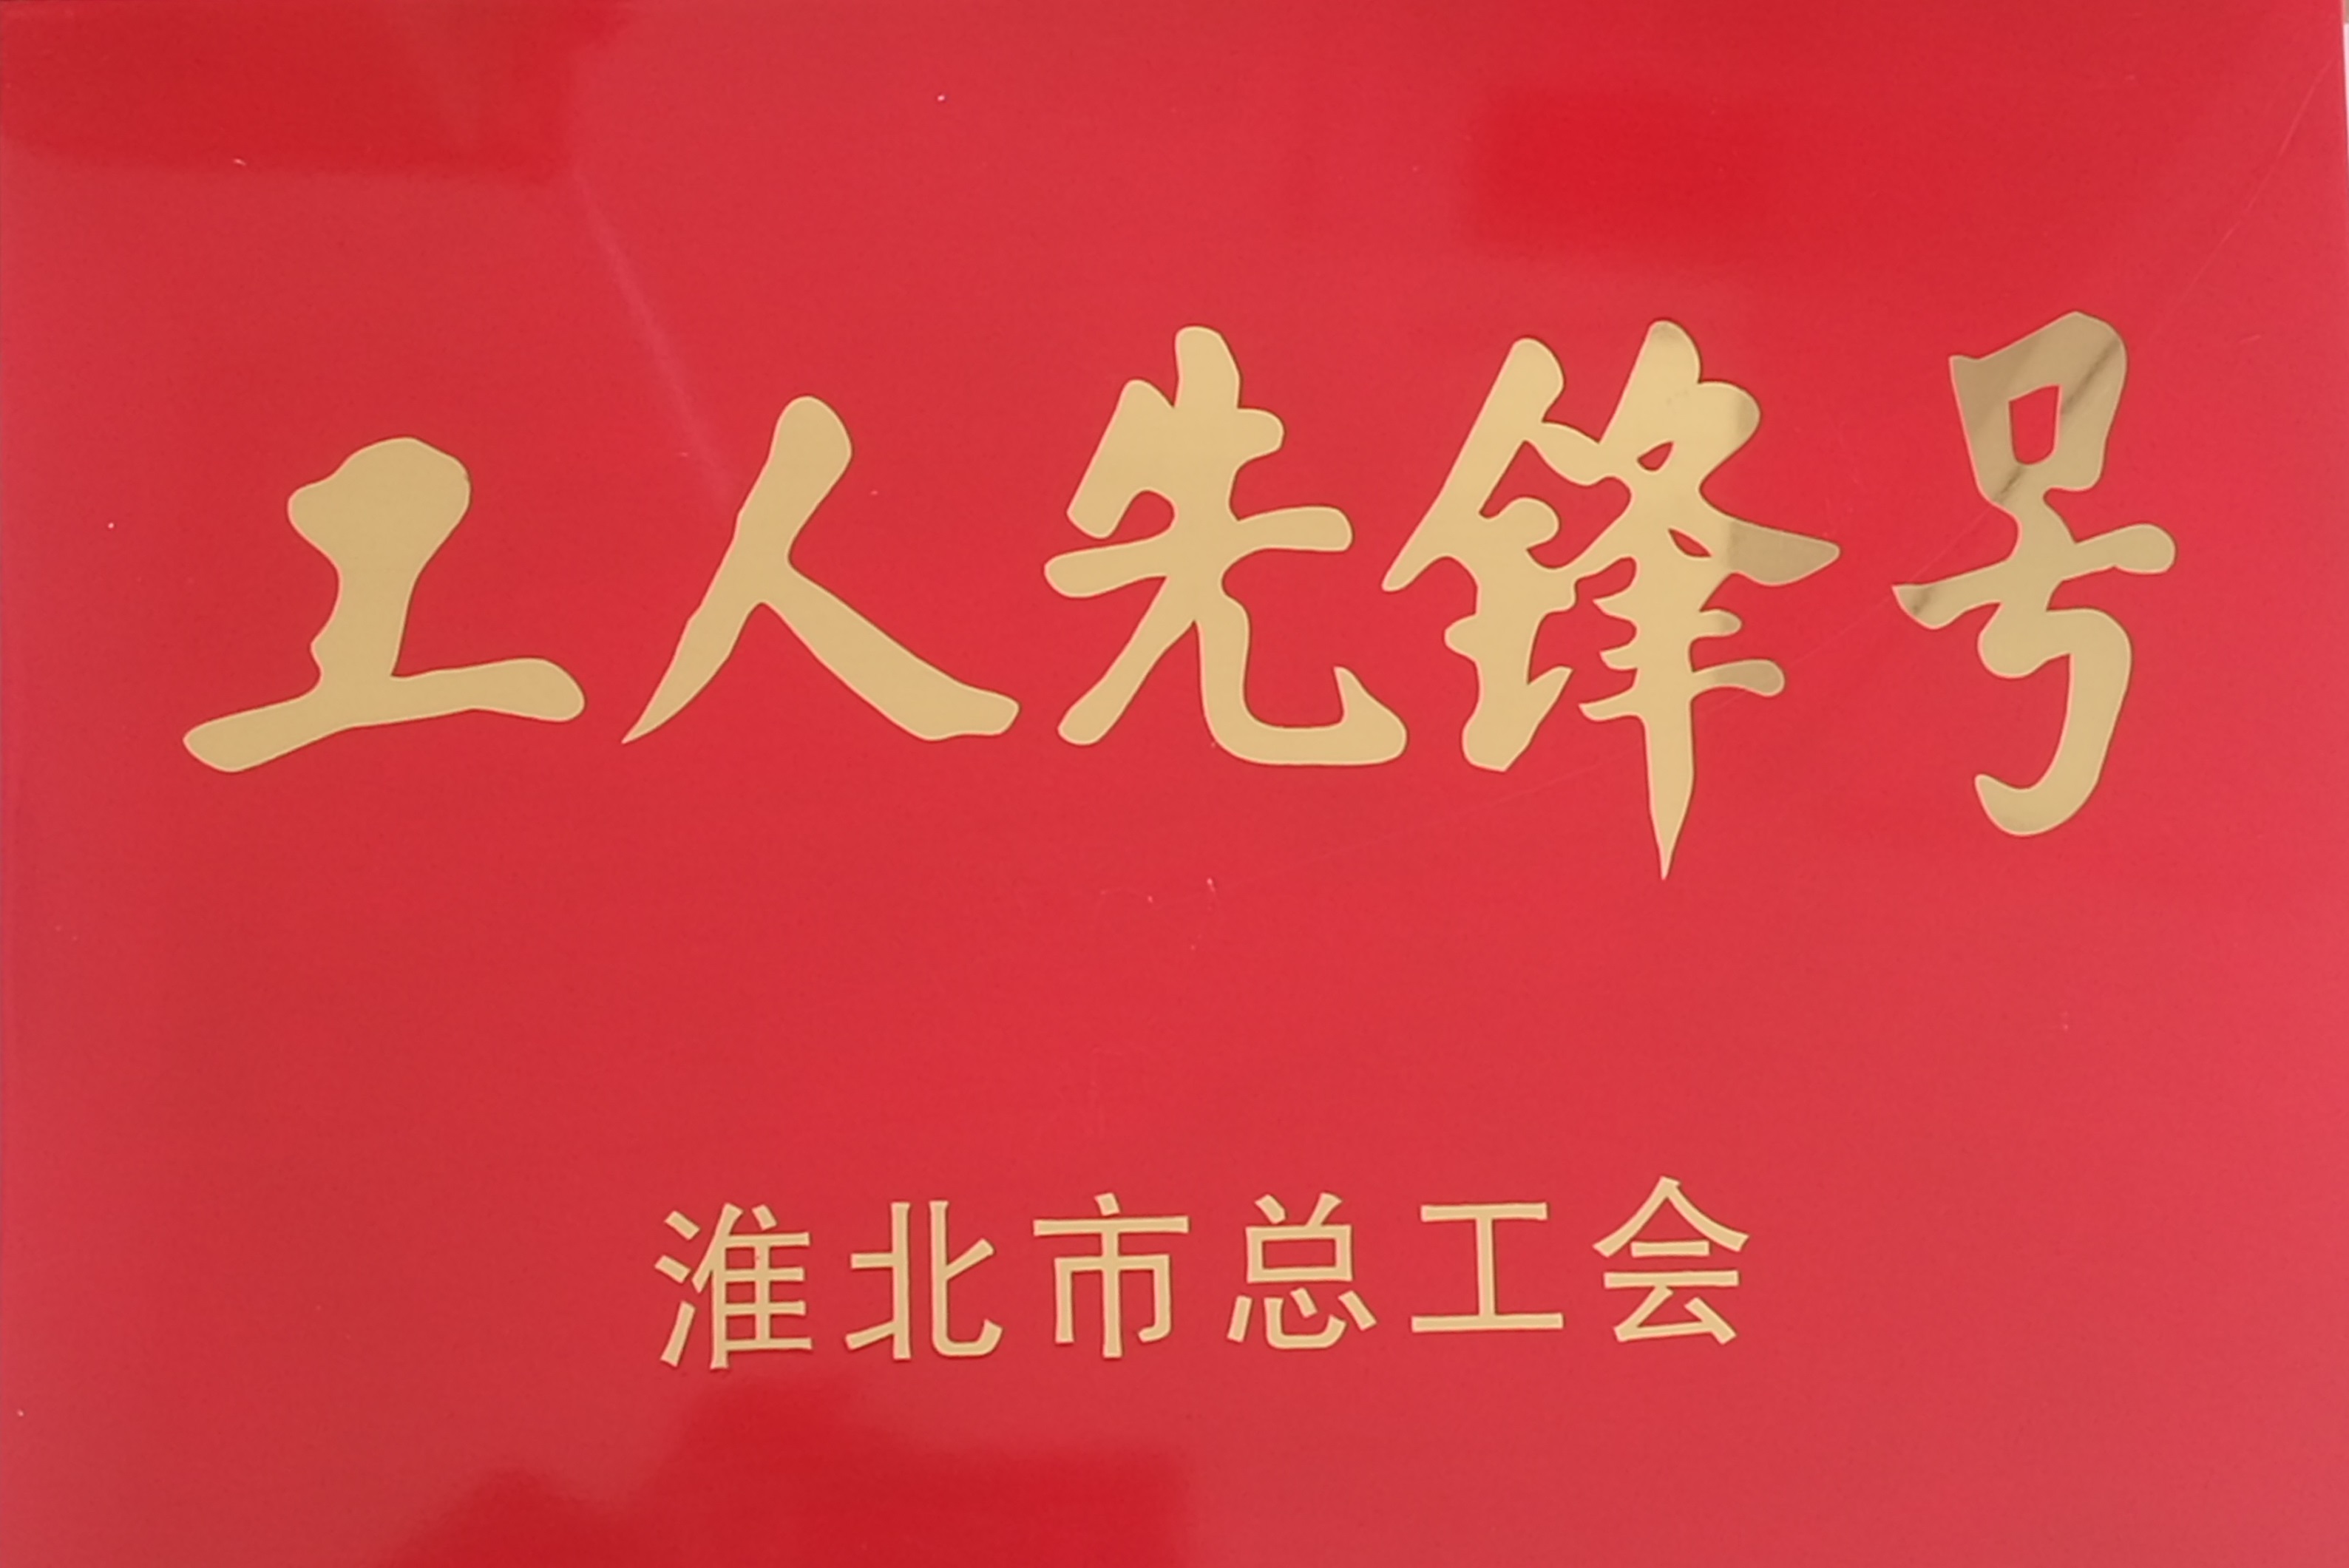 中铁十六局集团铁运公司符夹项目部喜获淮北市工人先锋号荣誉称号